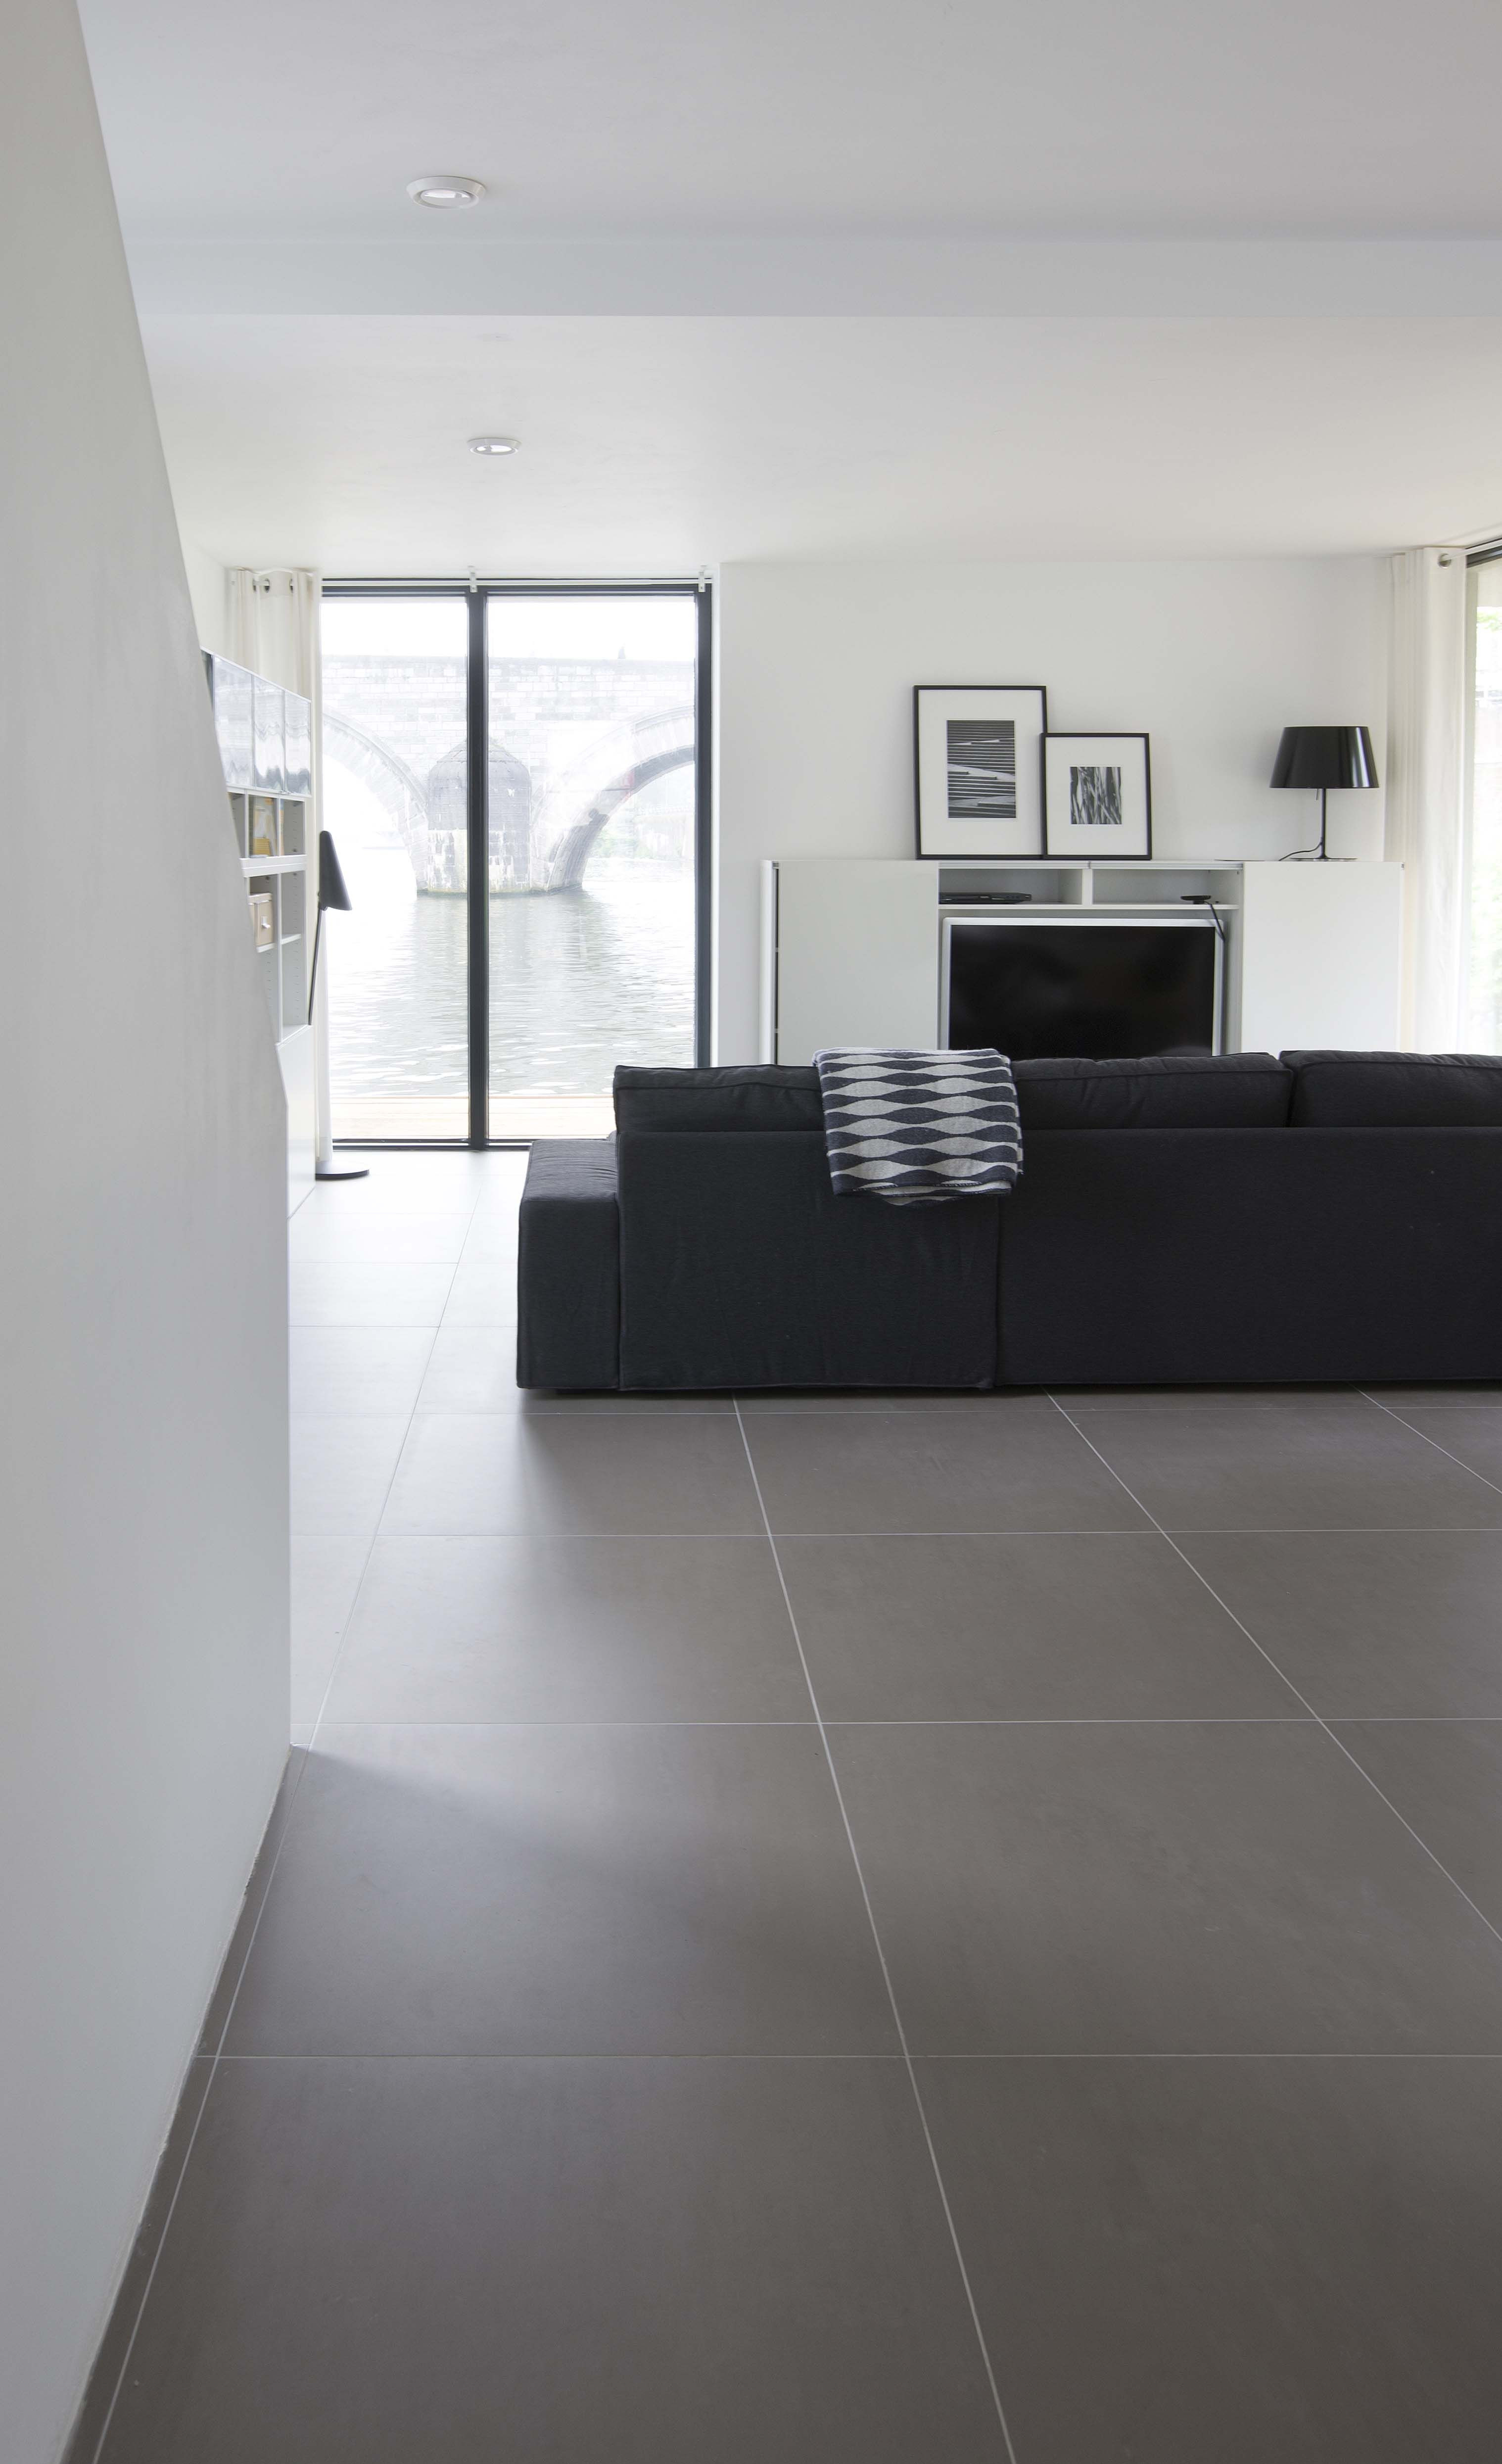 Fliesen Grau
 modernes Wohnzimmer schlichtes Feinsteinzeug in grau